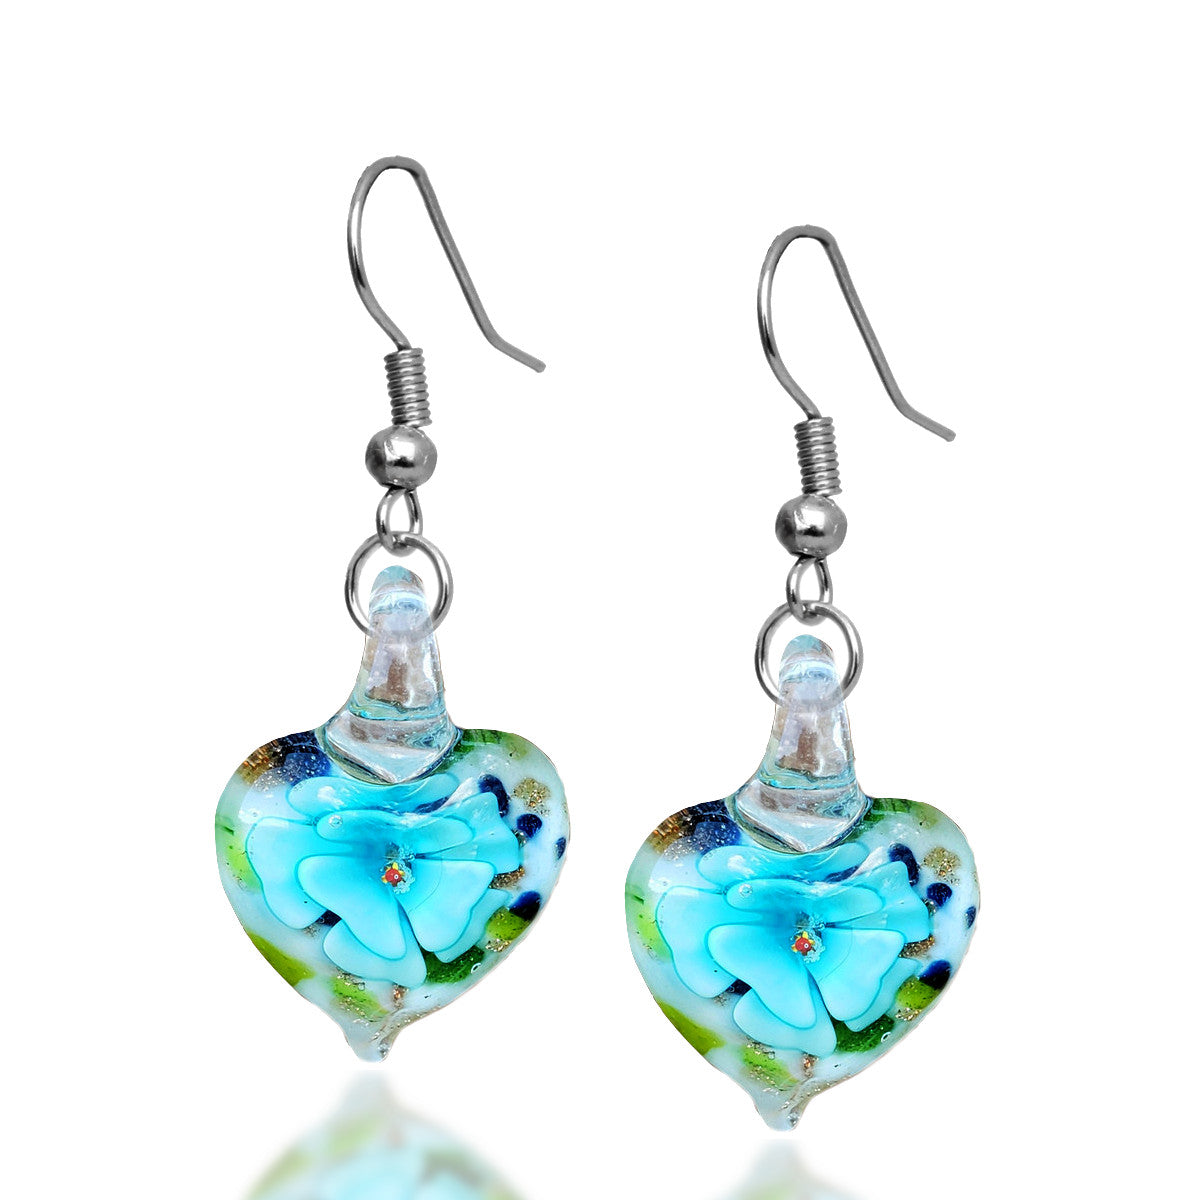 BESHEEK Sterling Silver Handmade Murano-inpired Blue Rose in Confetti Heart Fused Glass Dangle Earrings | Hypoallergenic Boho Beach Gala Wedding Style Fashion Earrings